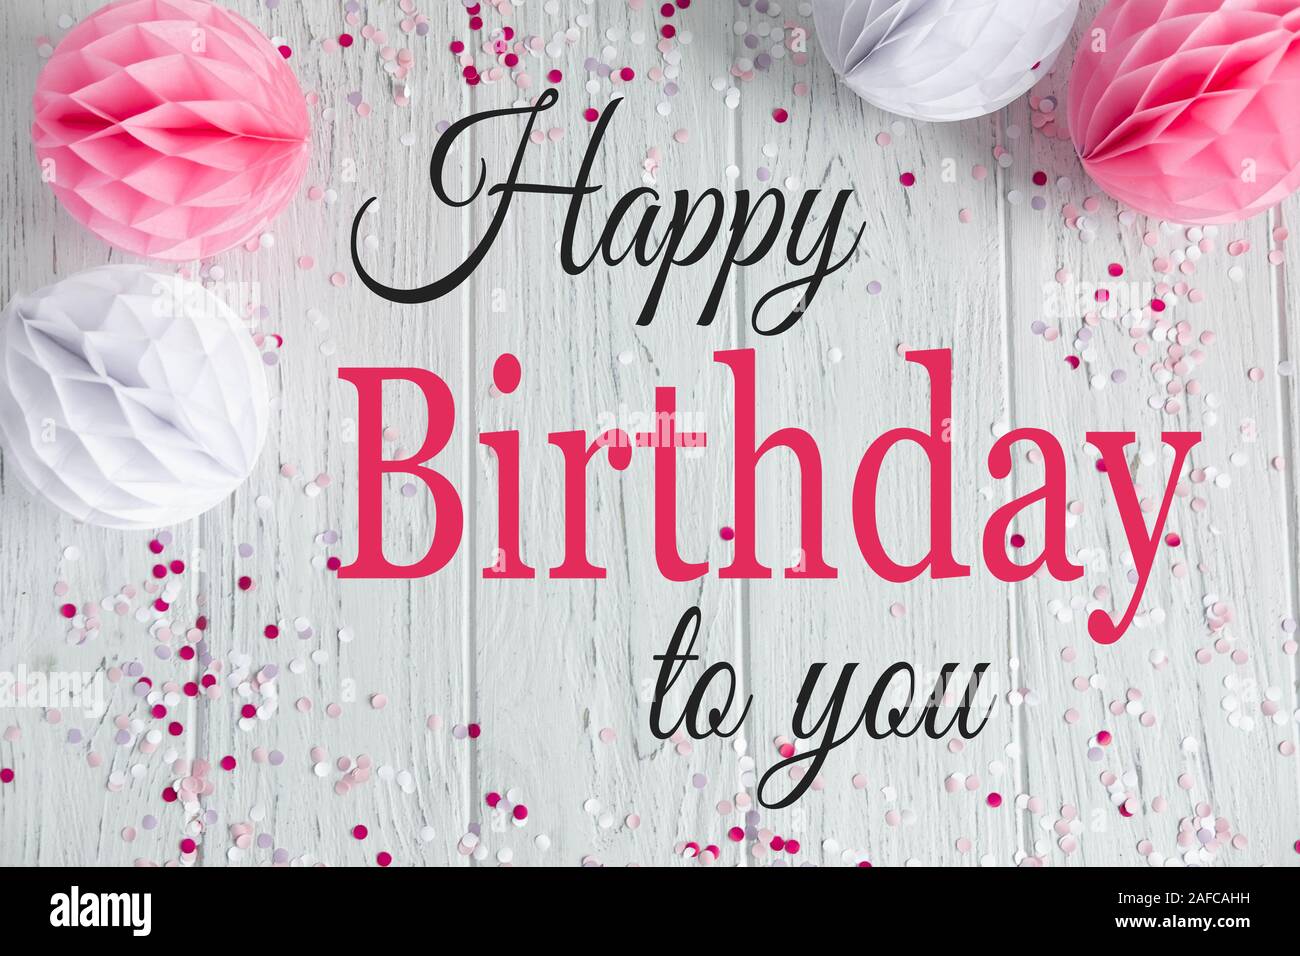 Herzlichen Gluckwunsch Zum Geburtstag Zu Ihnen Geburtstagskarte Mit Ballons Und Pompons Grusskarte Fur E Newsletter Blog Stockfotografie Alamy